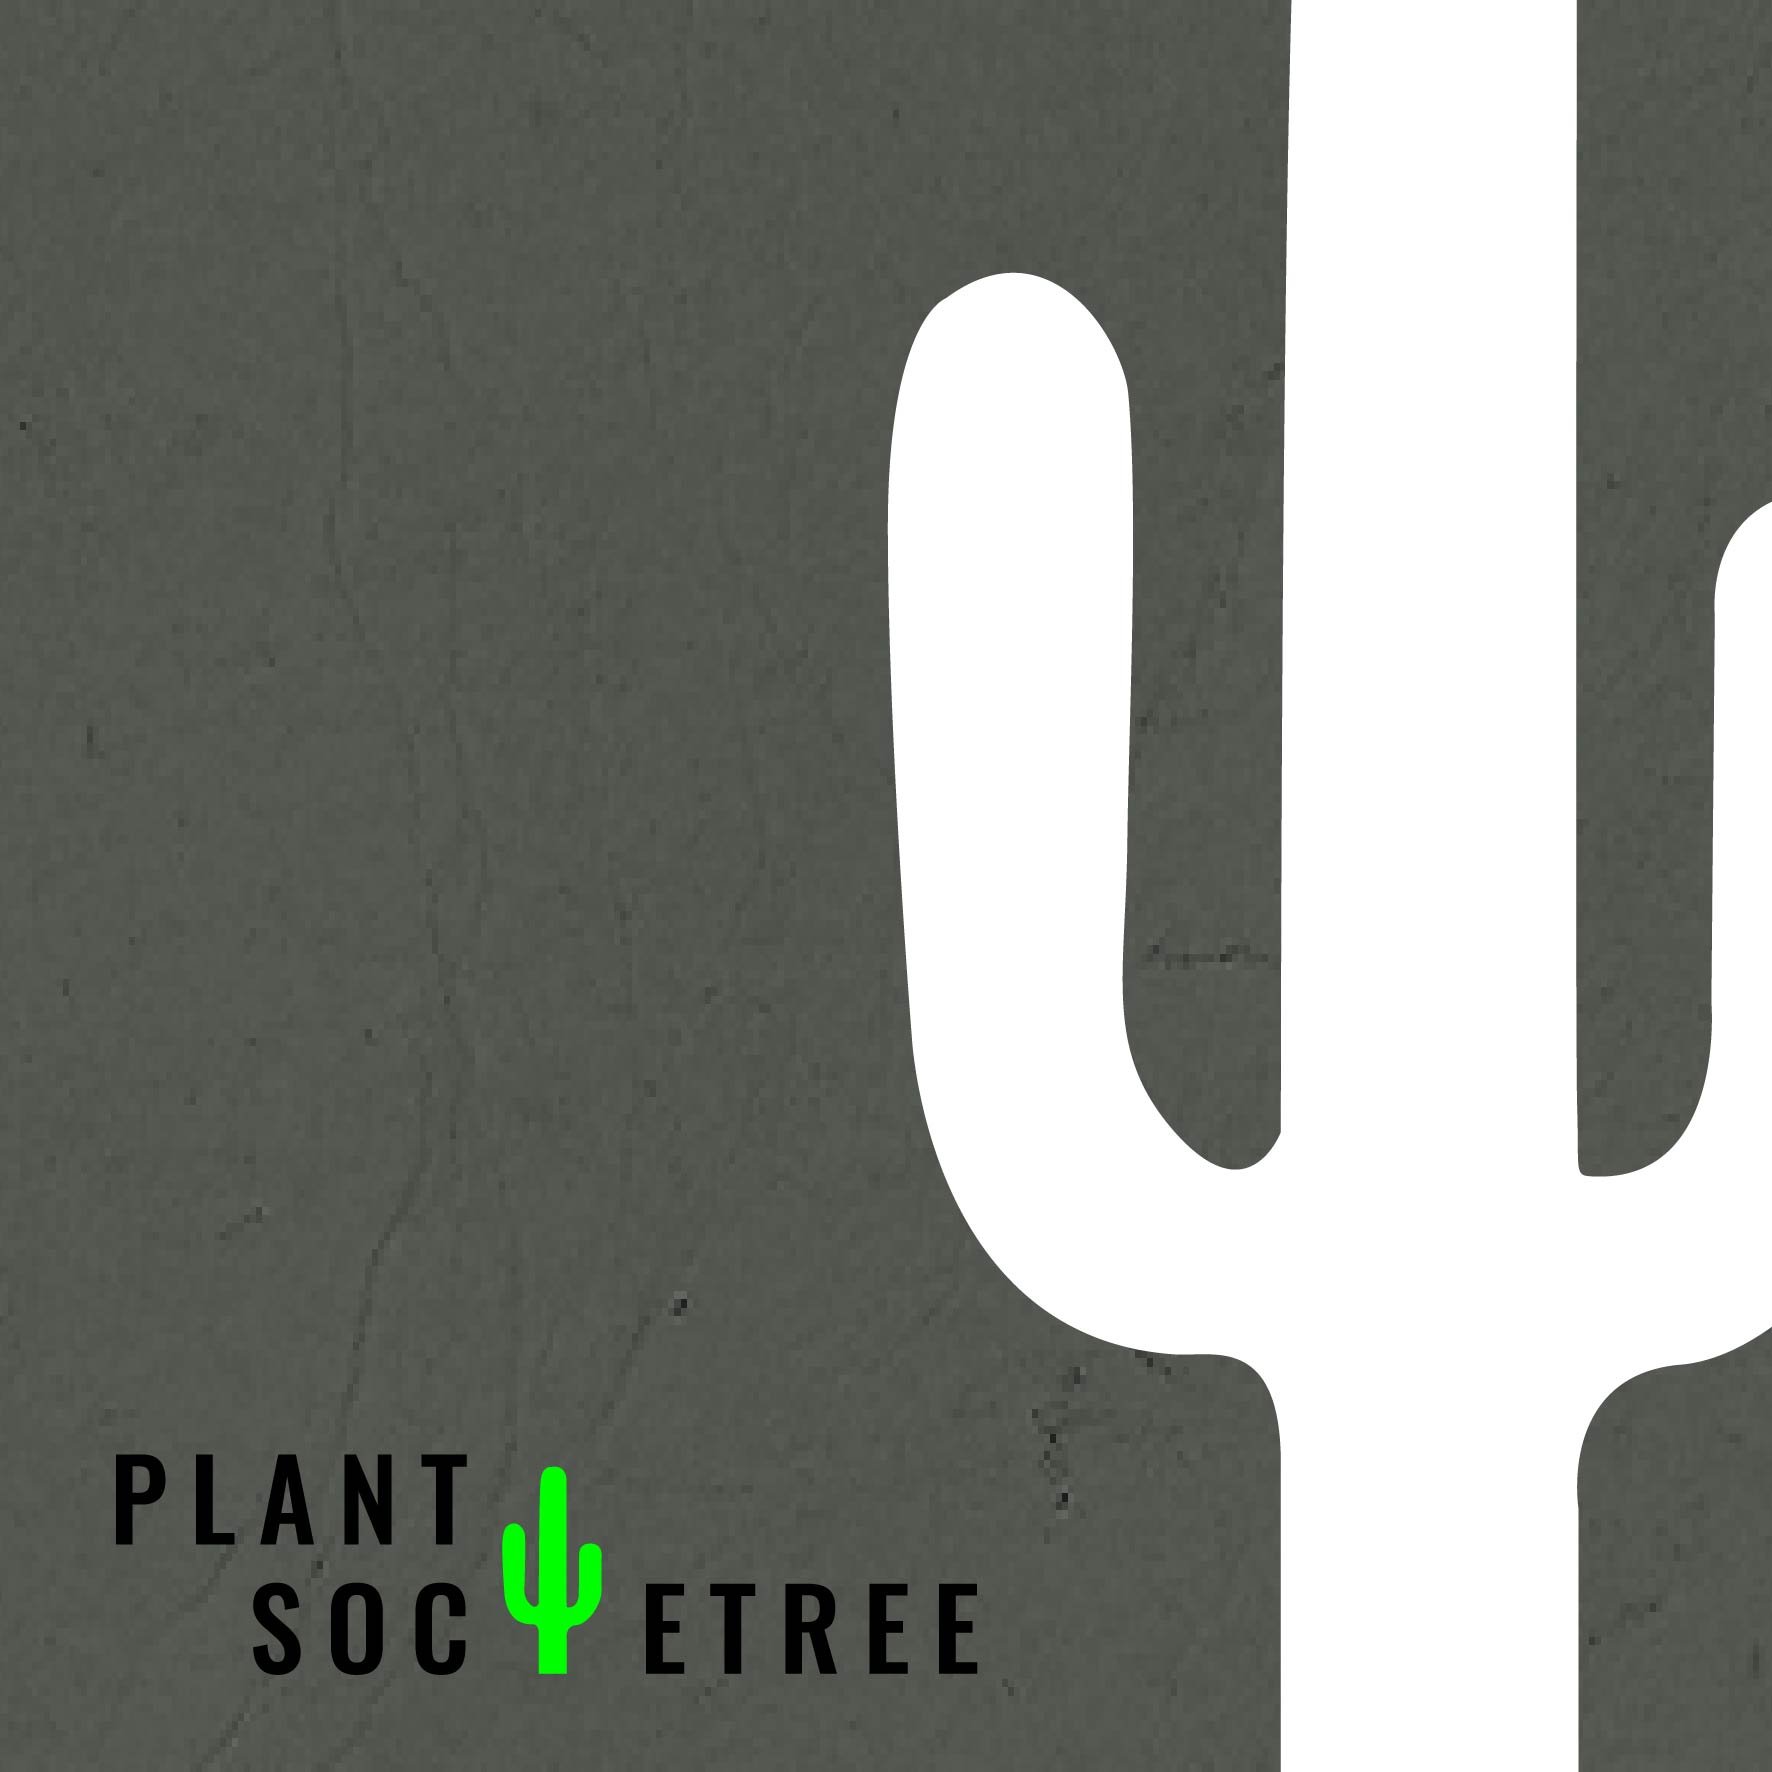 Plantsocietree__social_media_square-03.jpg